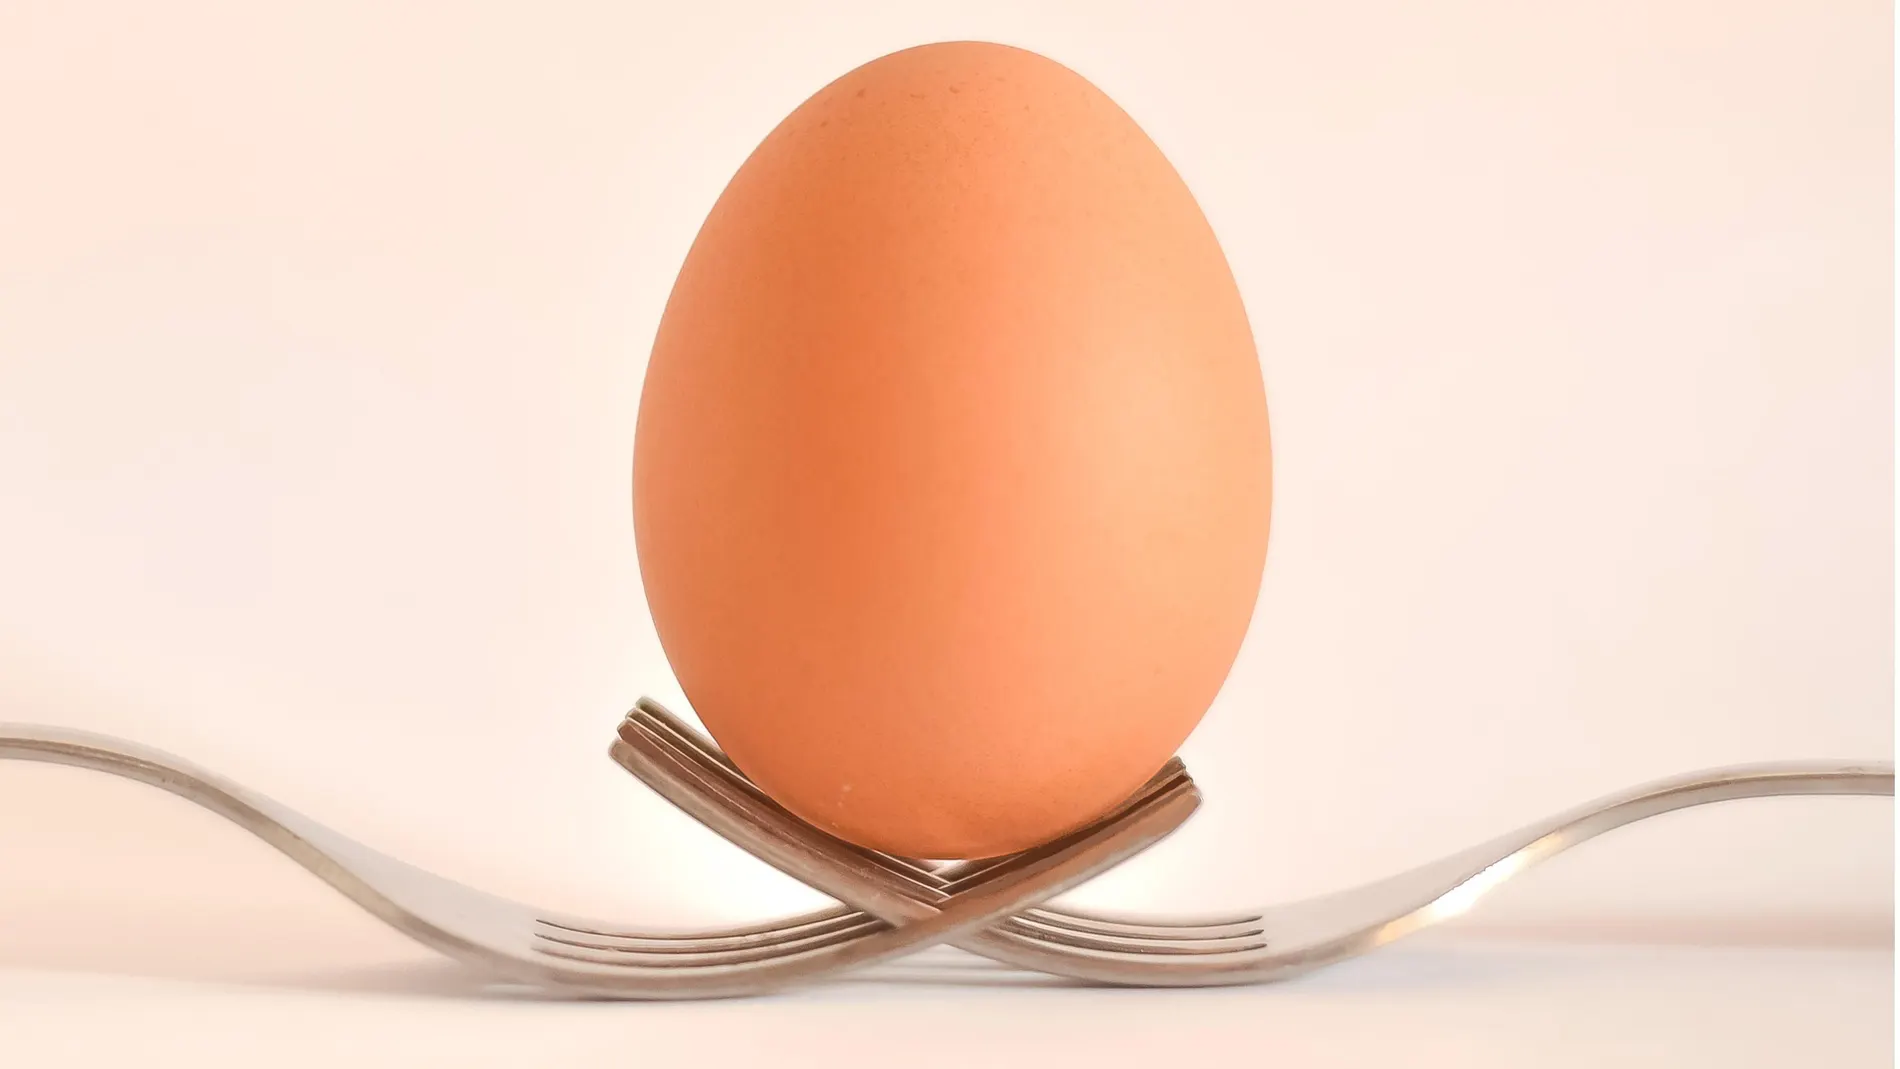 Comer huevos vegetales es posible | Fuente: Pexels / Pixabay